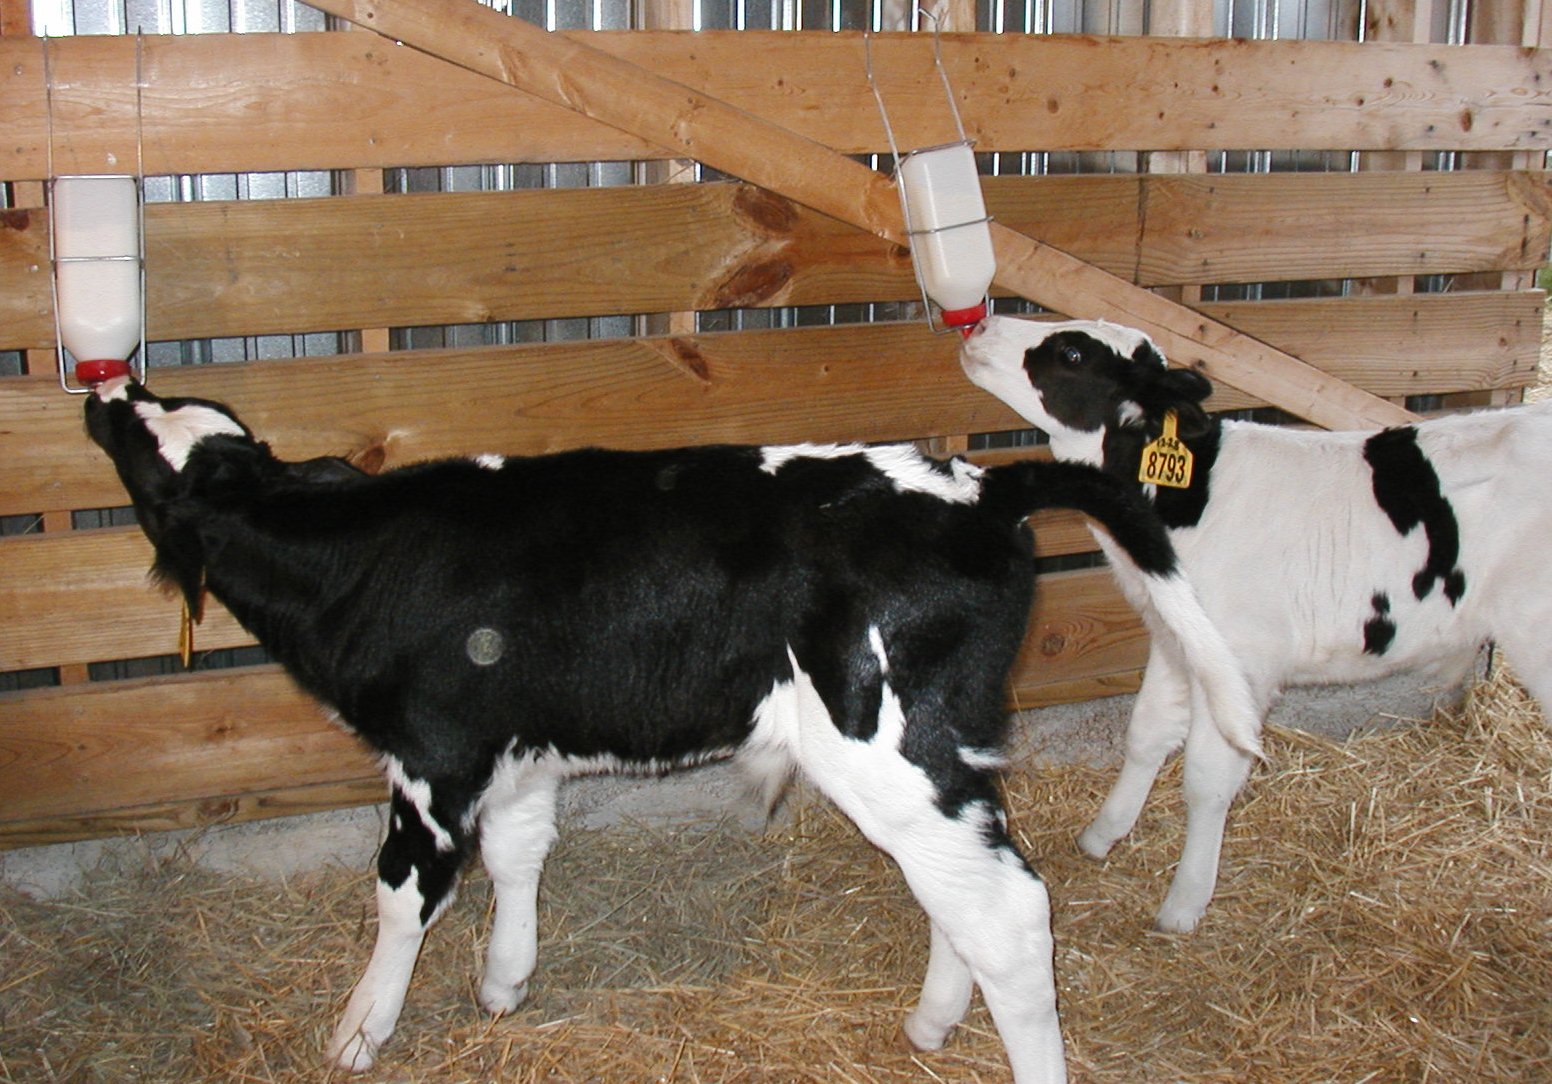 photos of calves